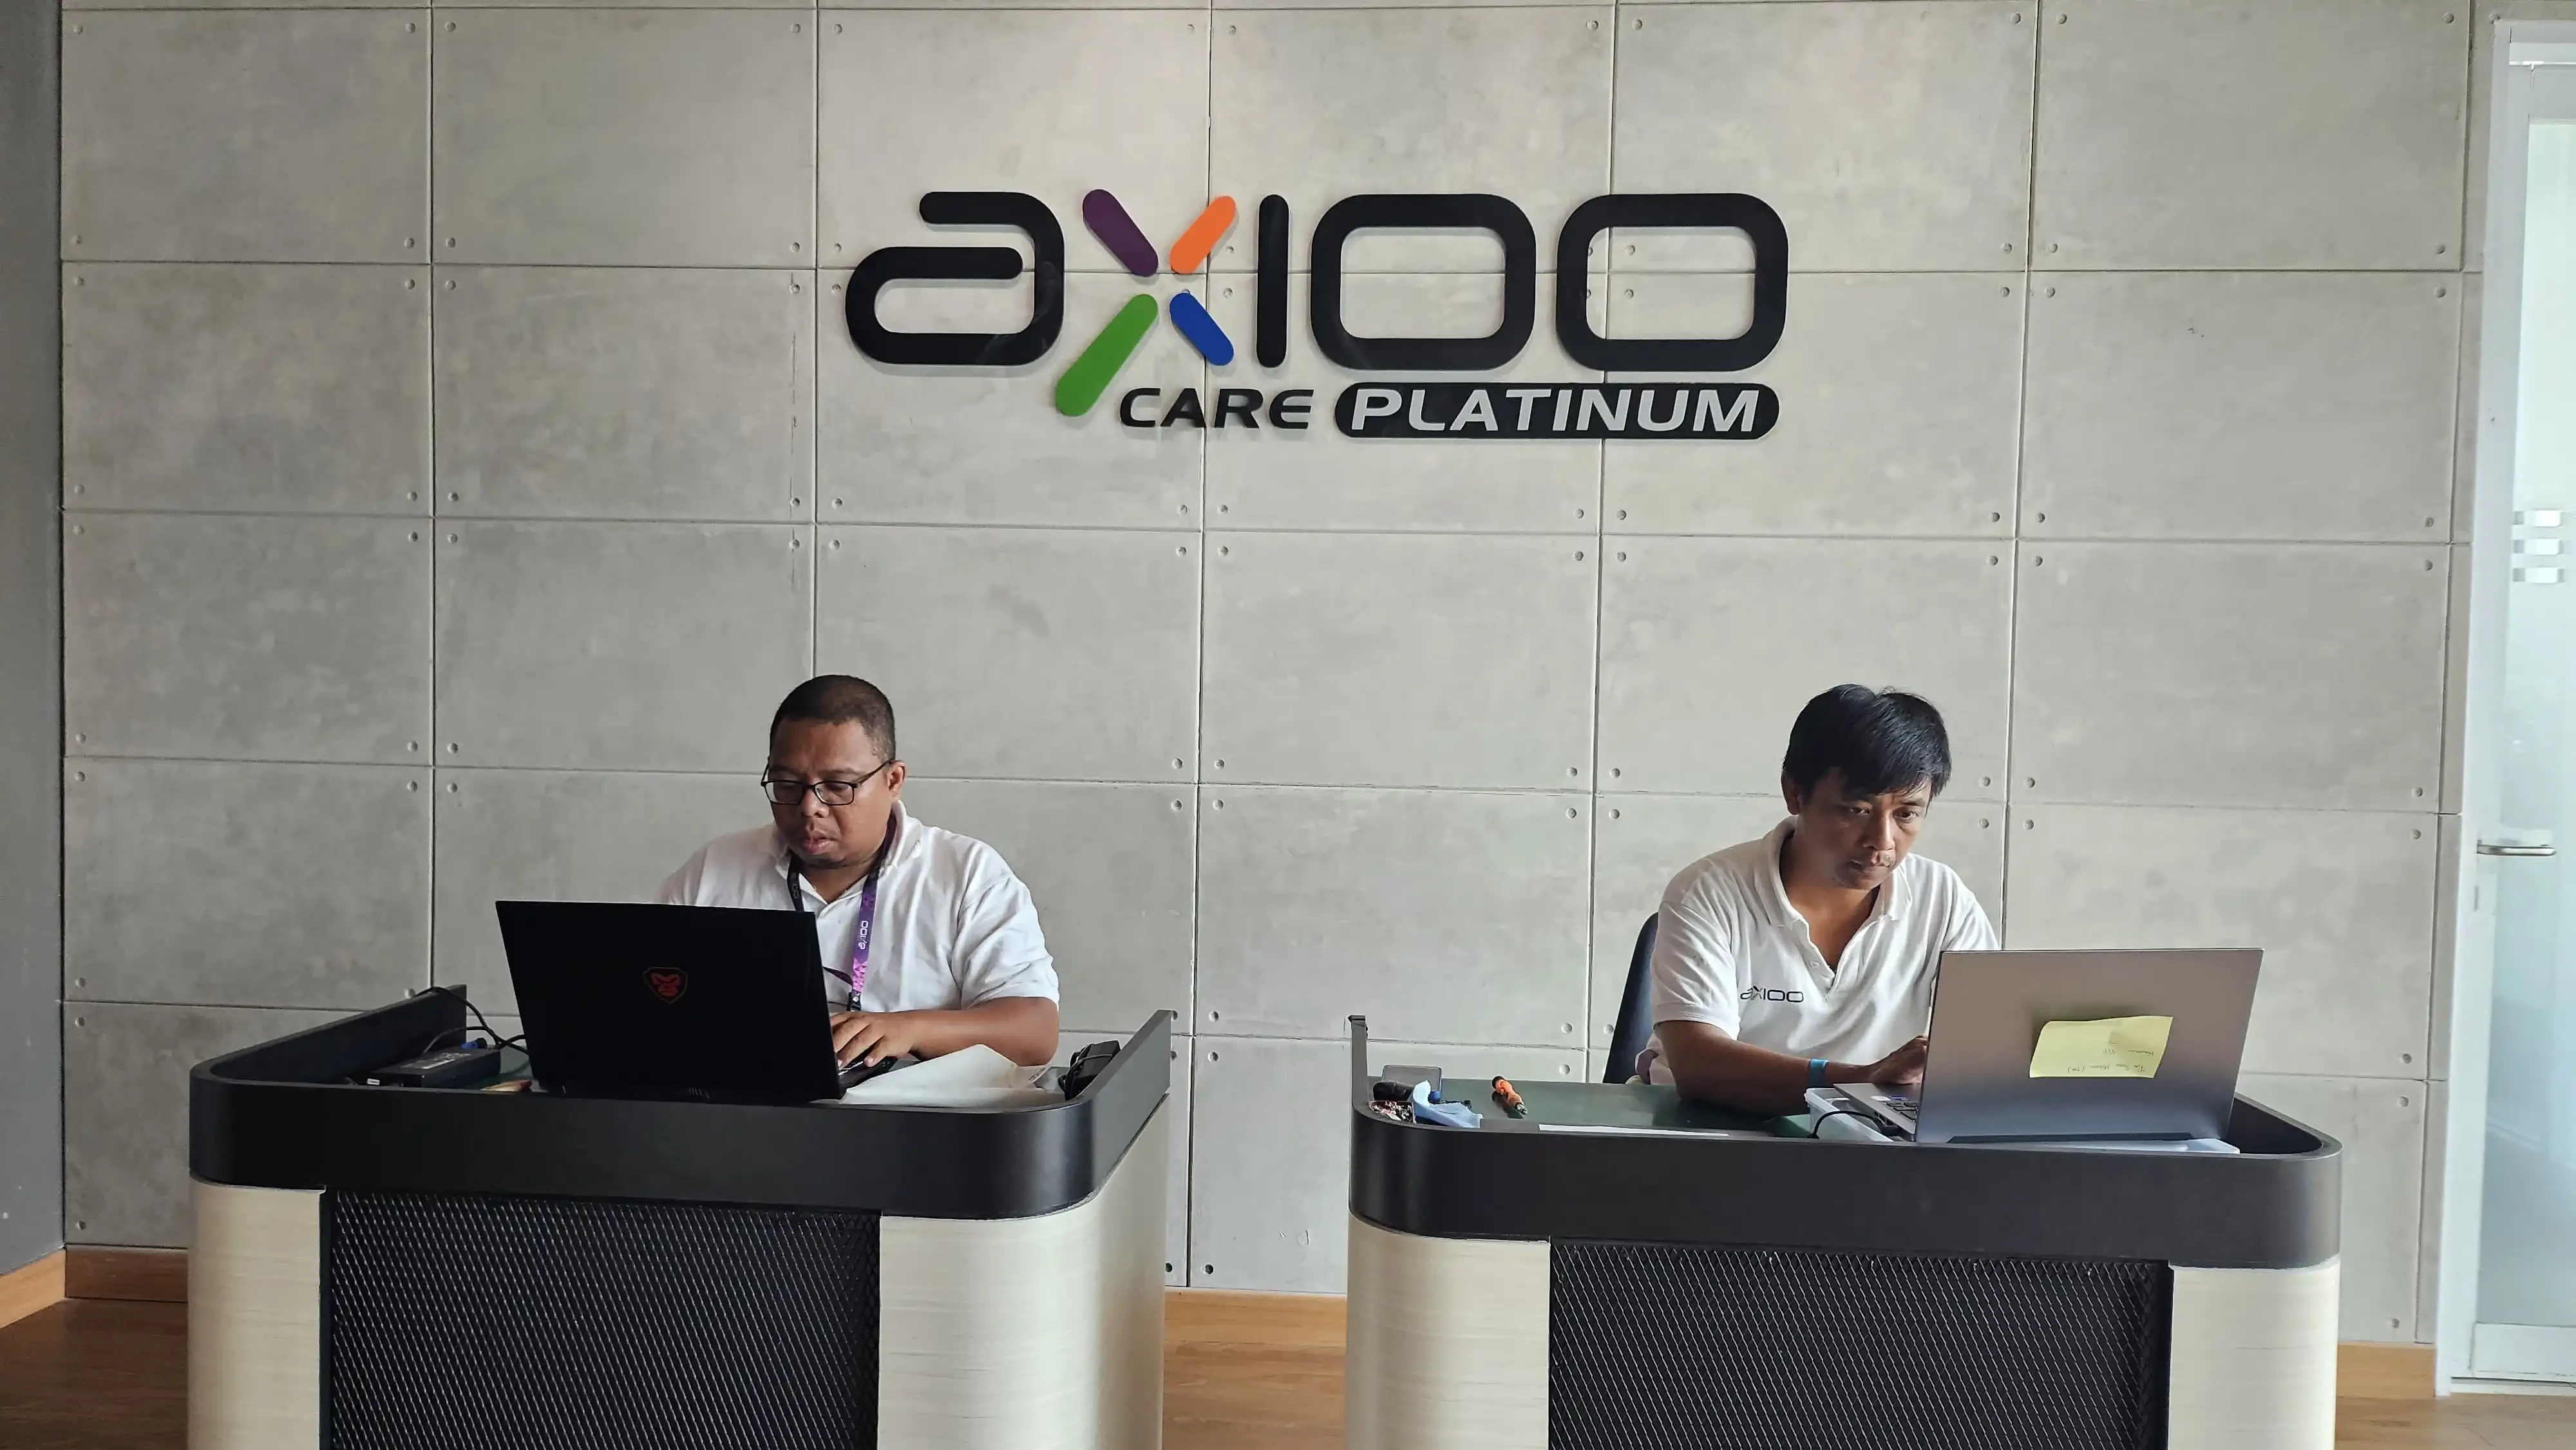 Axioo Platinum Service Center 